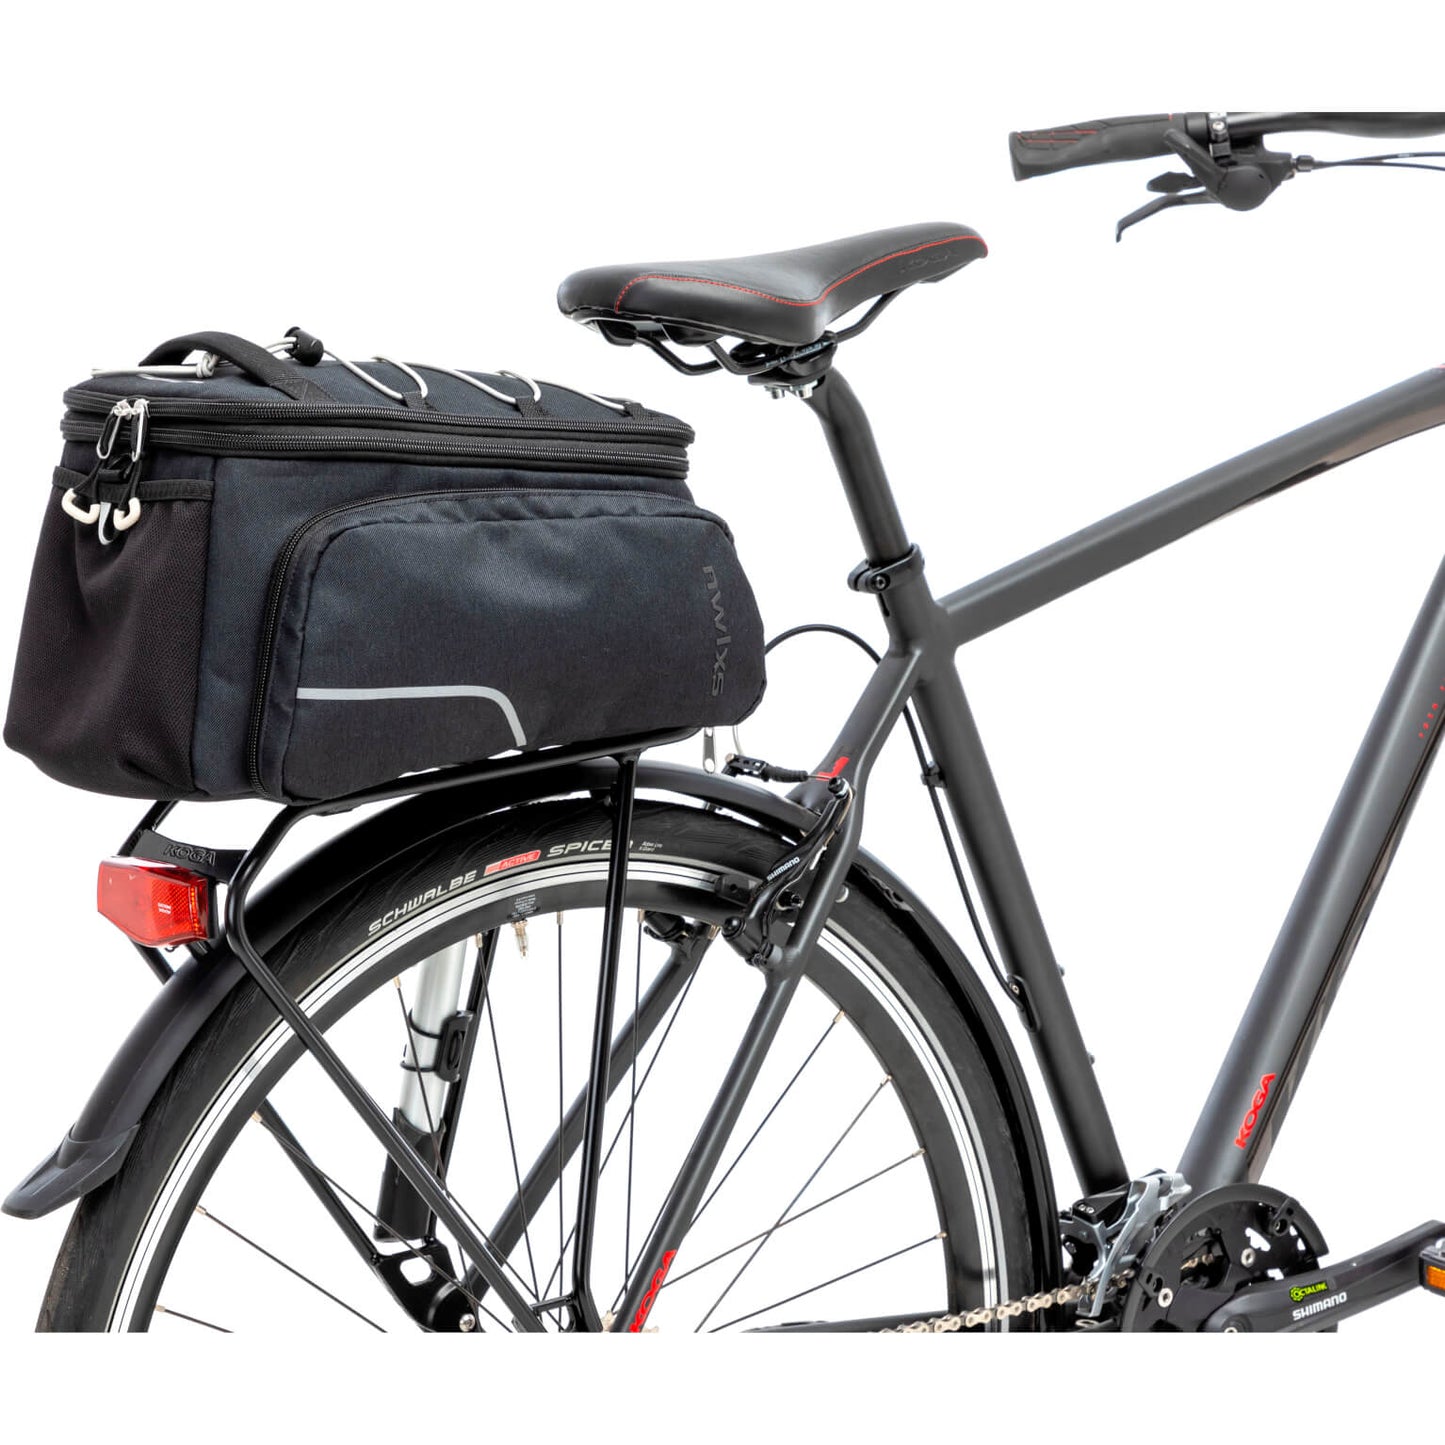 NUOVO LOOXS Sport Trunkbag RT - borsa per biciclette in poliestere nero